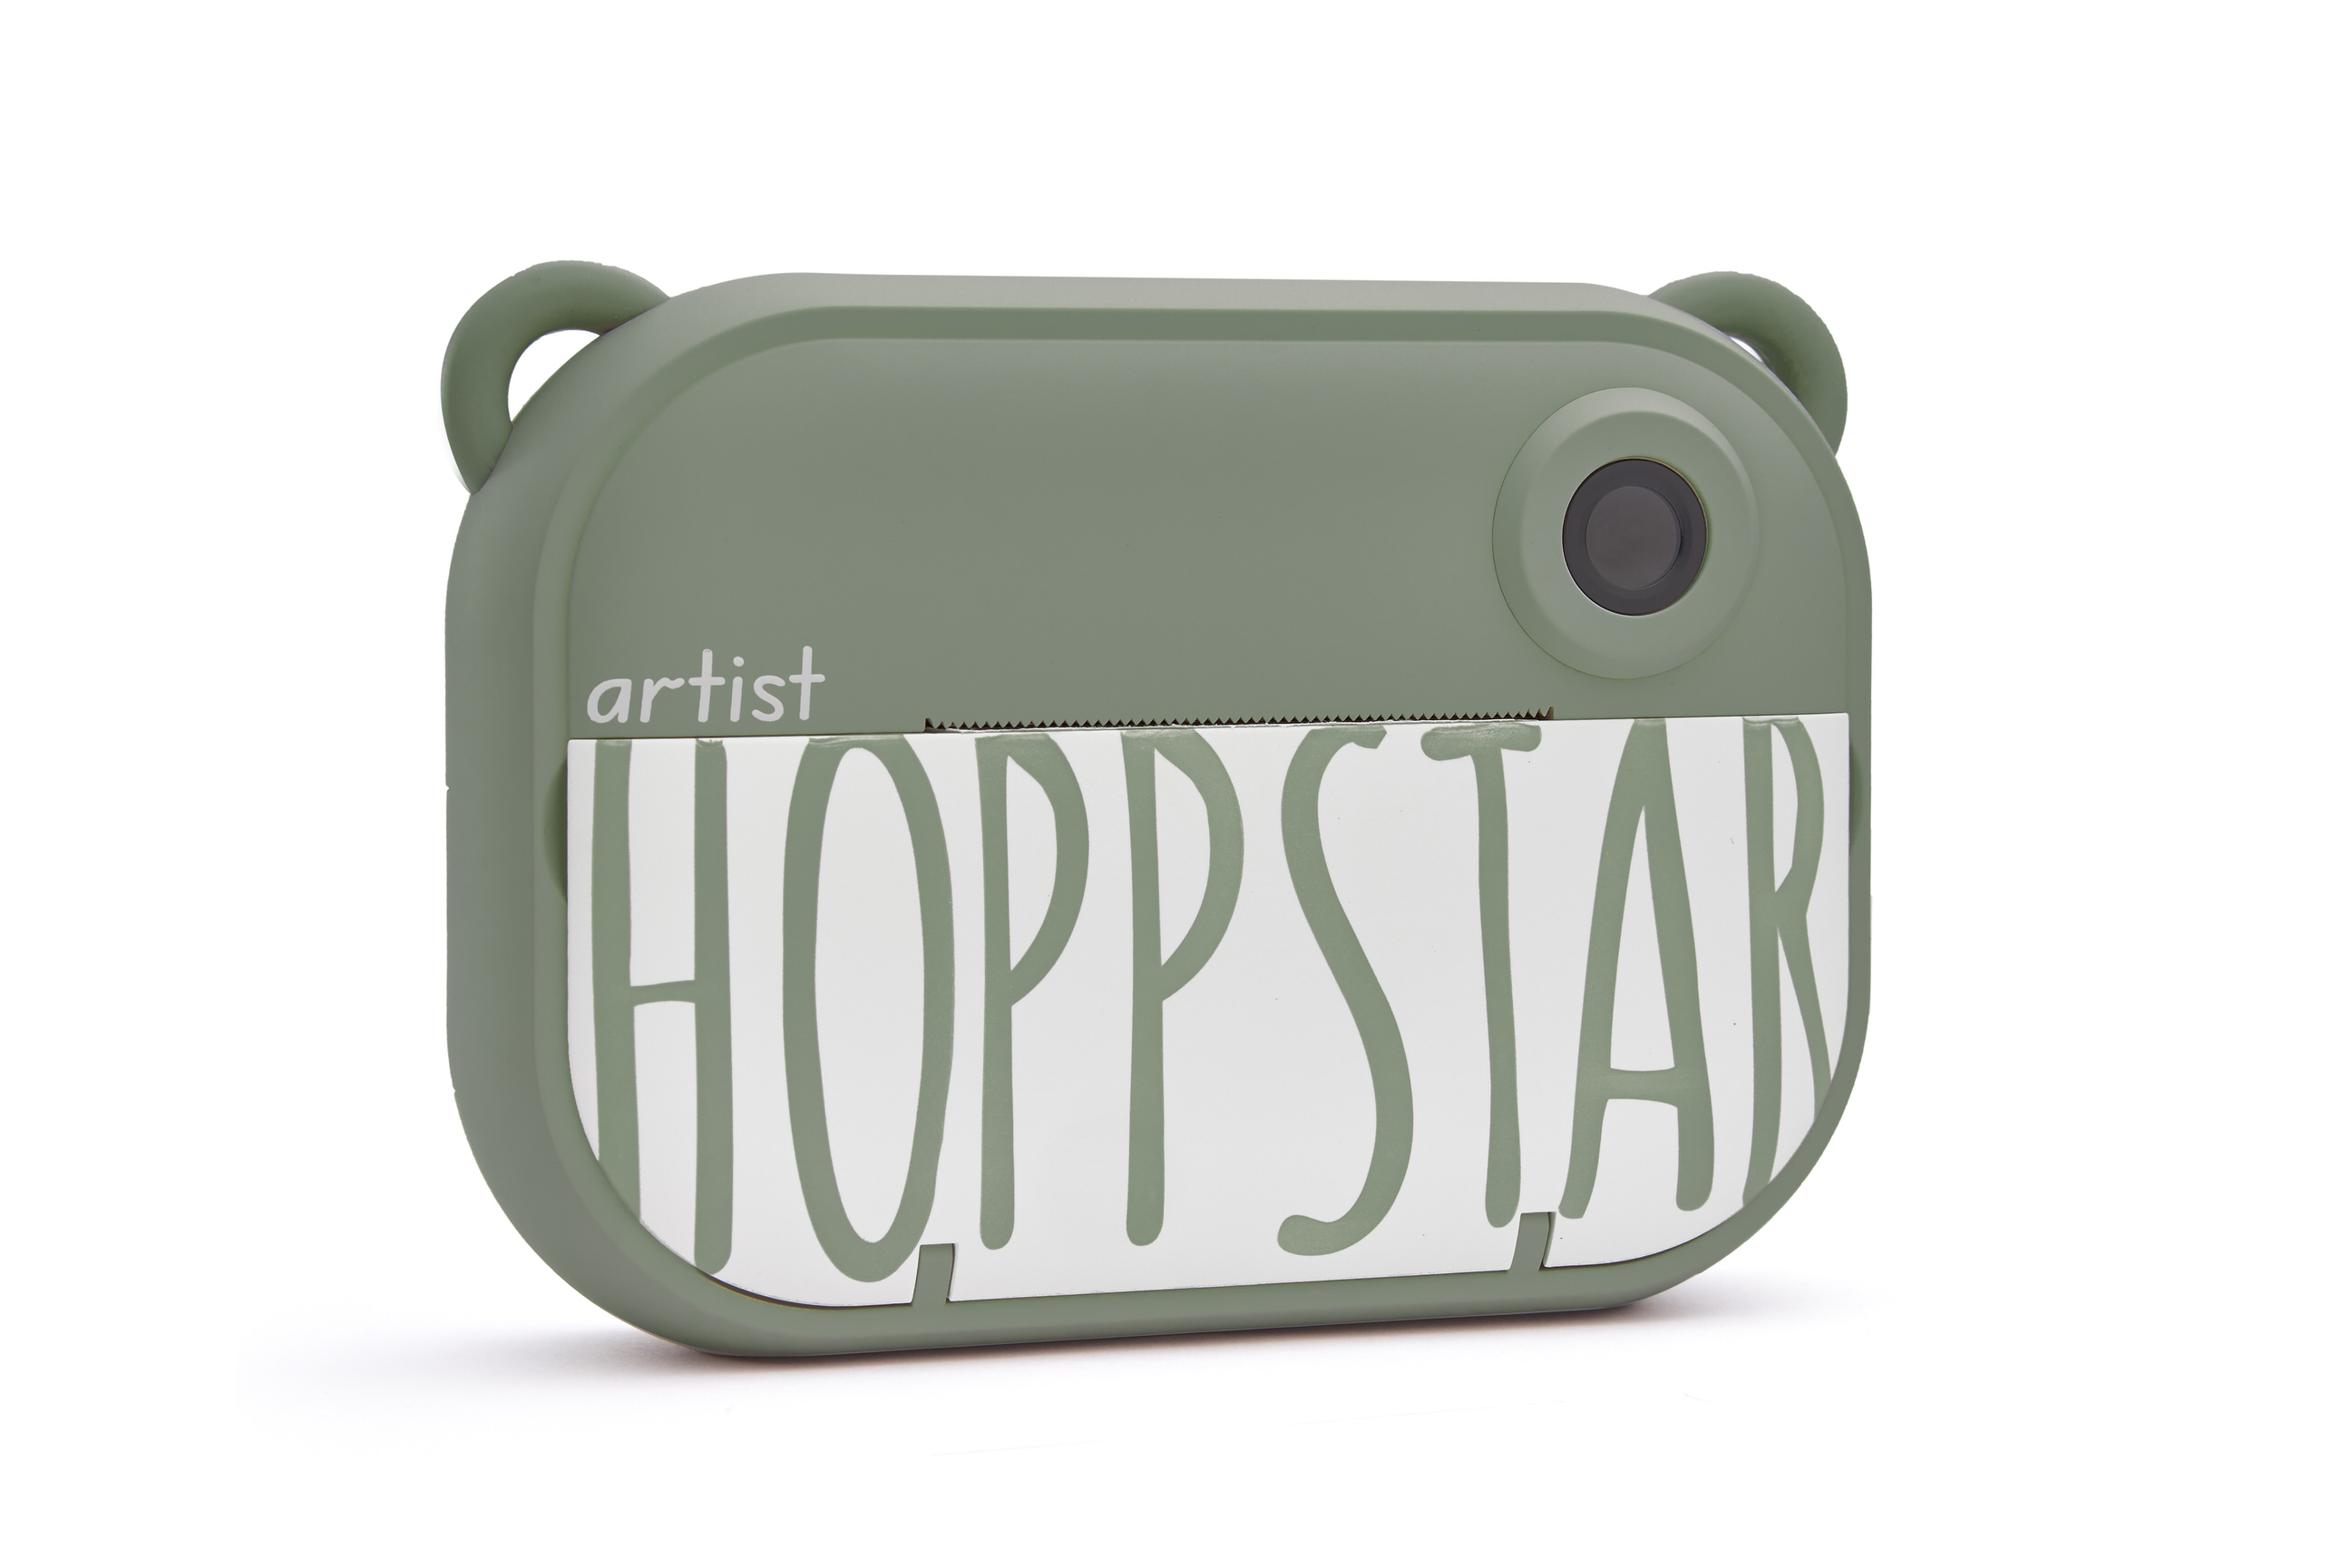 Hoppstar Artist Sofortbildkamera in der Farbe Laurel (grün), Frontalansicht leicht schräg